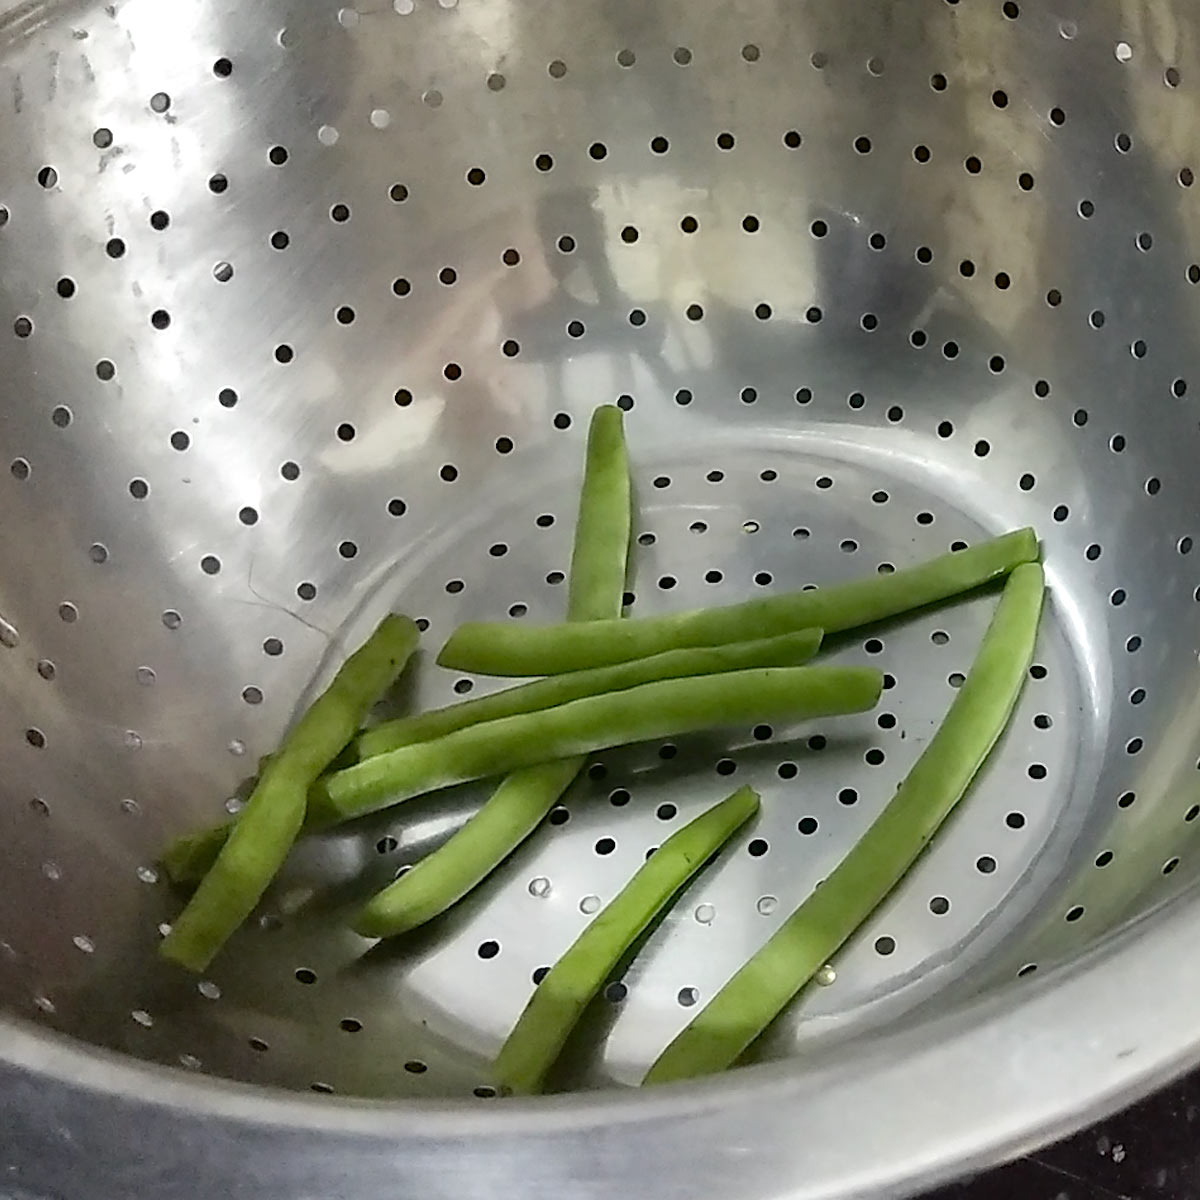 trimmed green beans